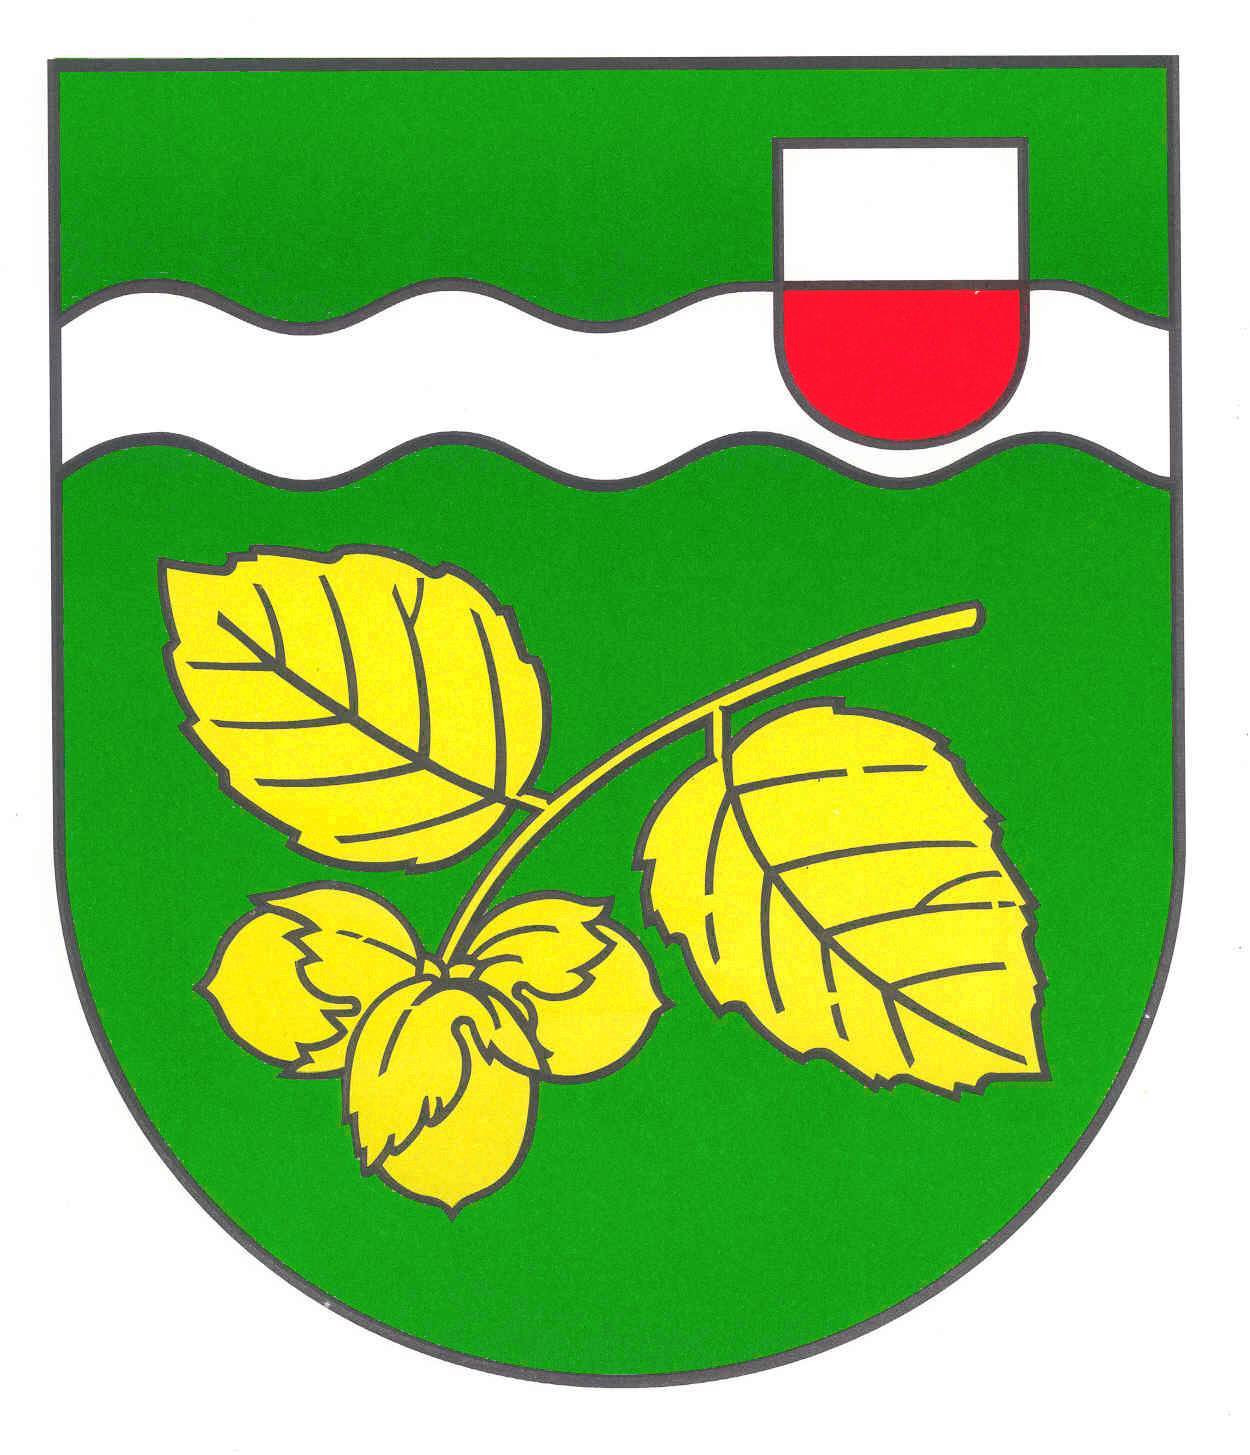 Wappen Gemeinde Nusse, Kreis Herzogtum Lauenburg